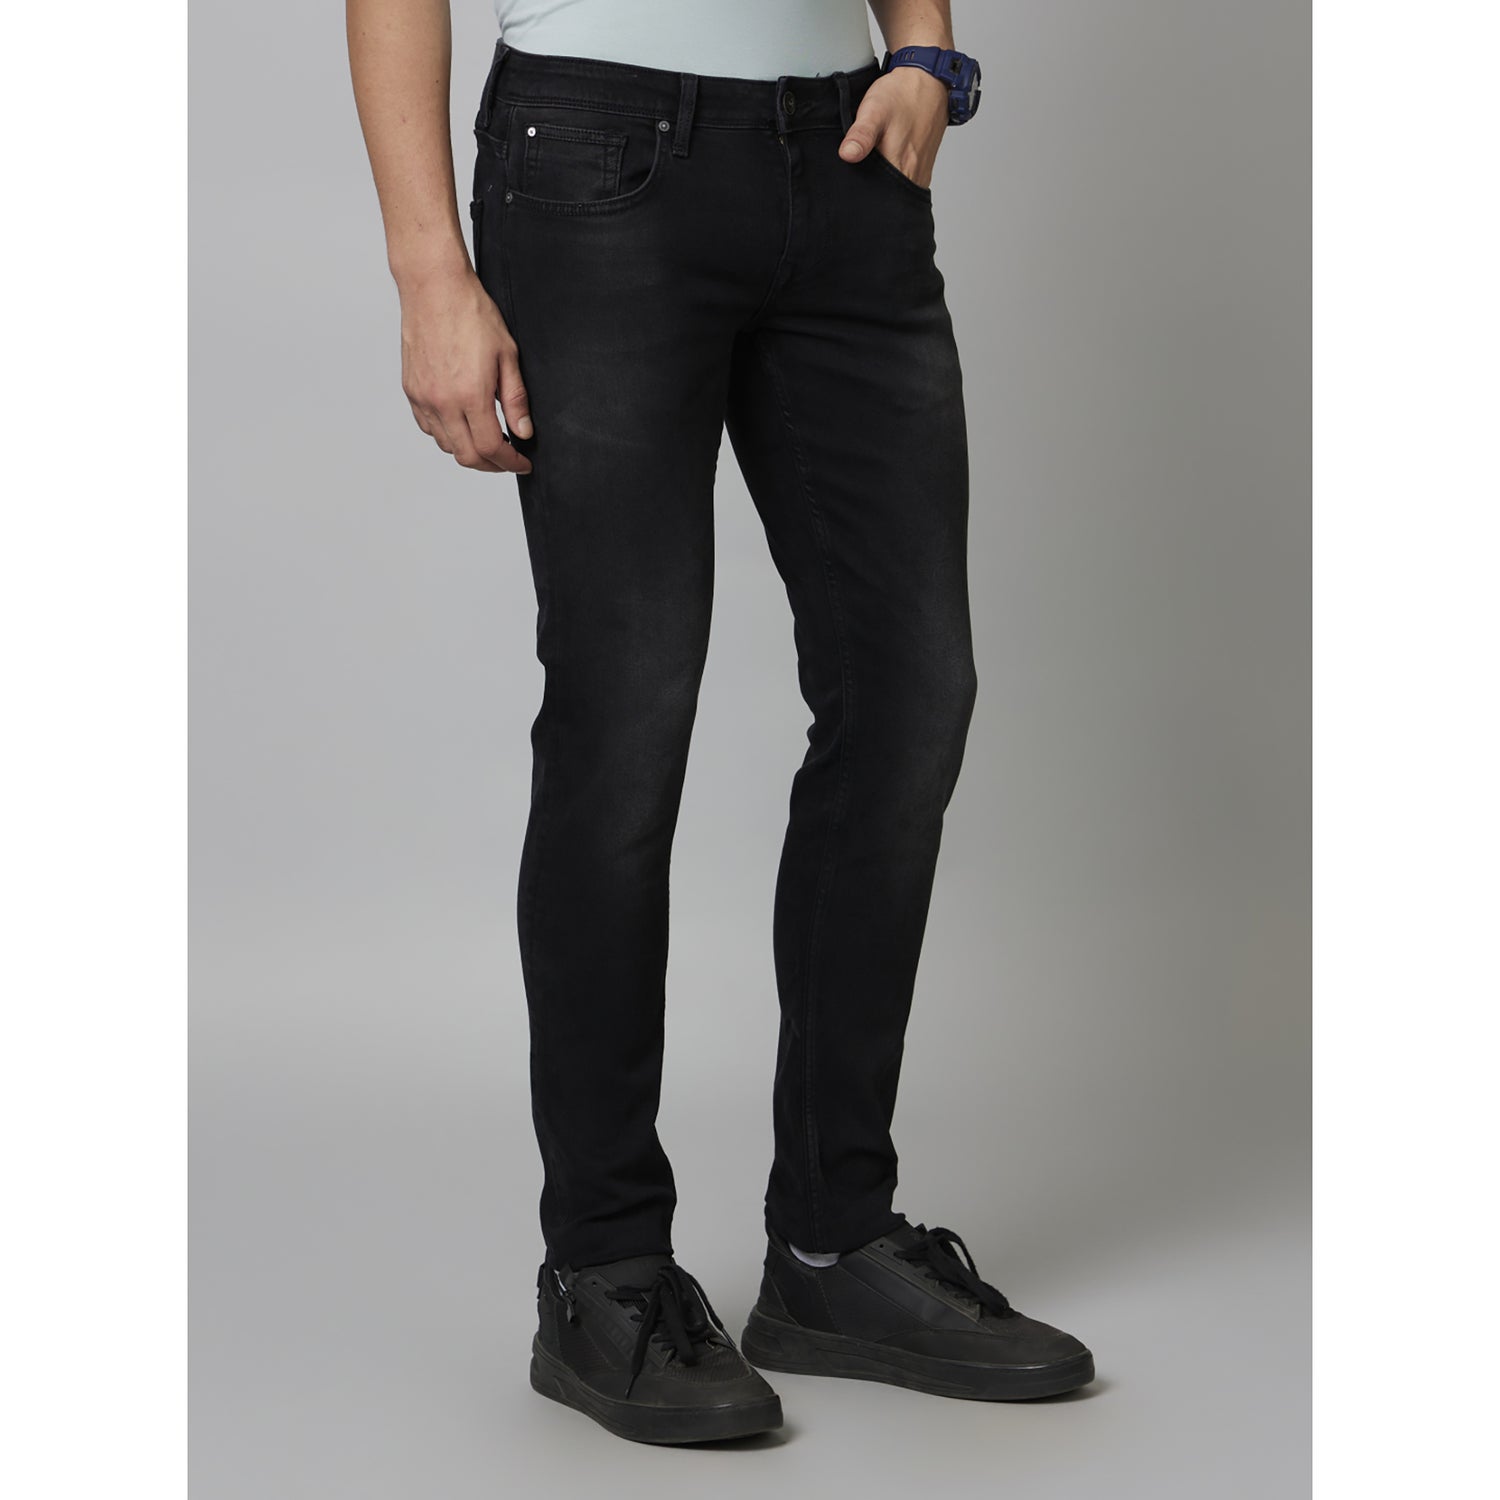 Black Solid Cotton Jeans (COECONOIR45)